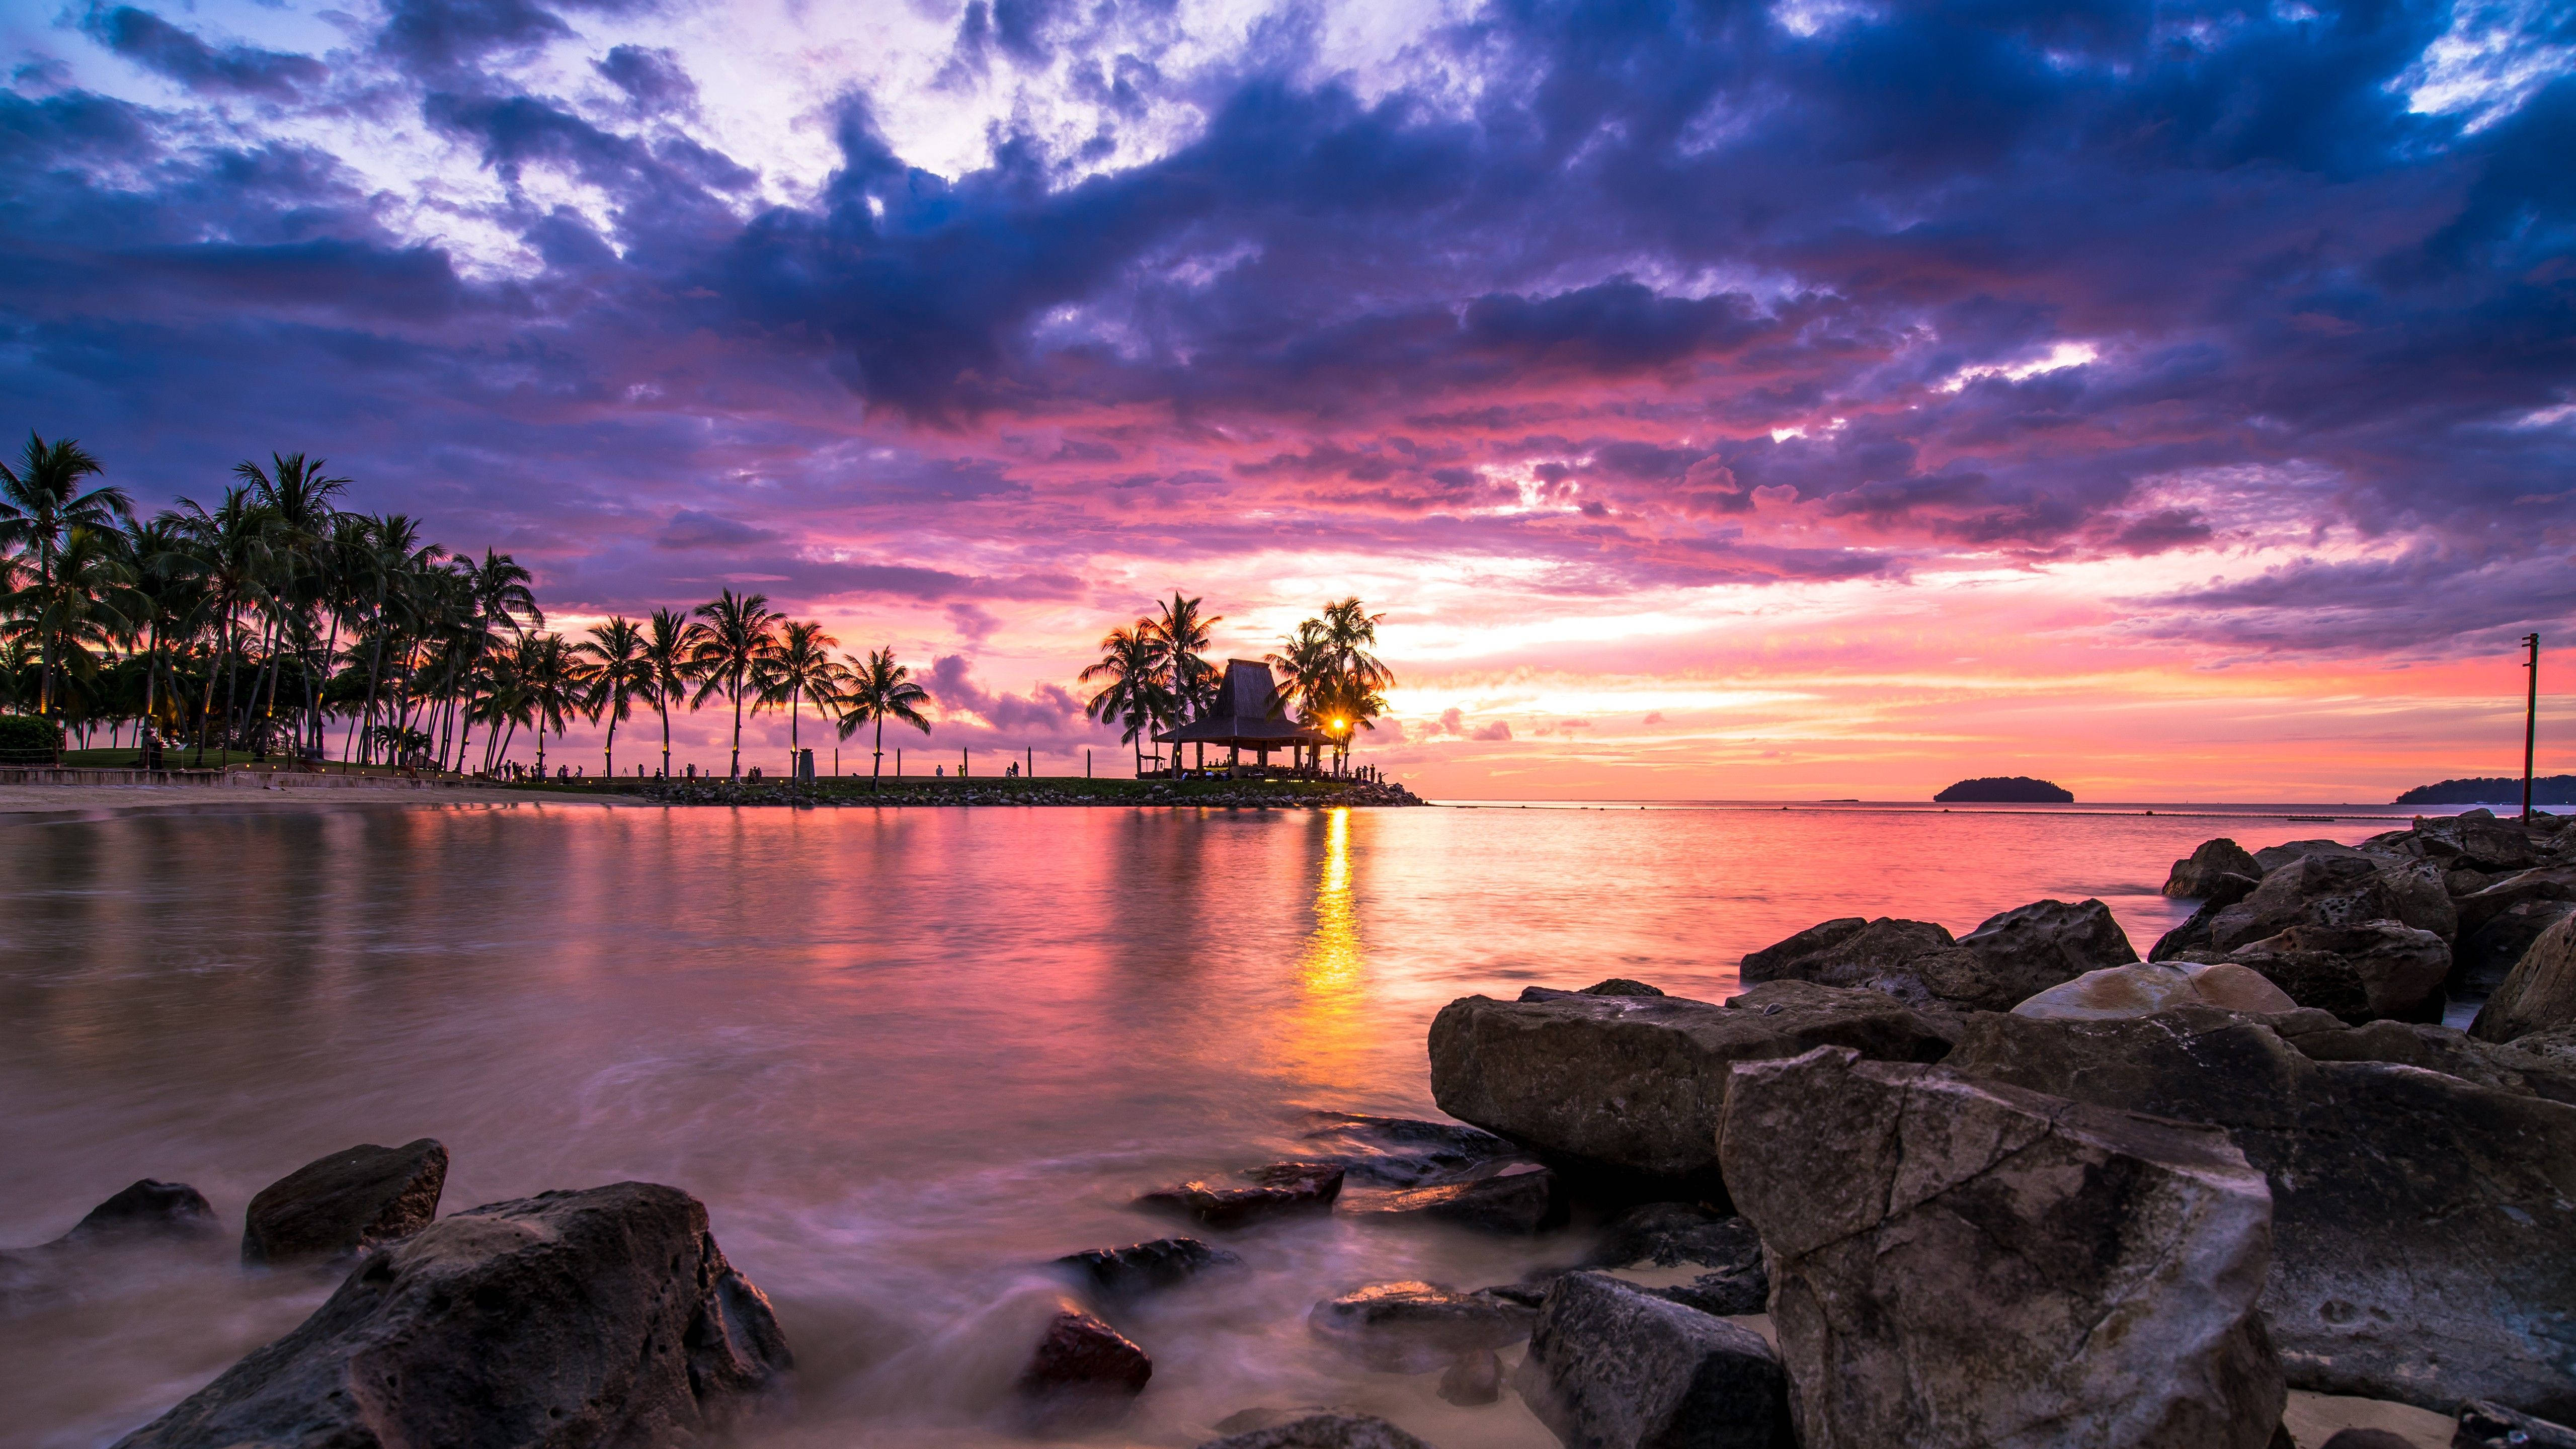 4K Desktop Wallpaper - stunning beach sunset scene